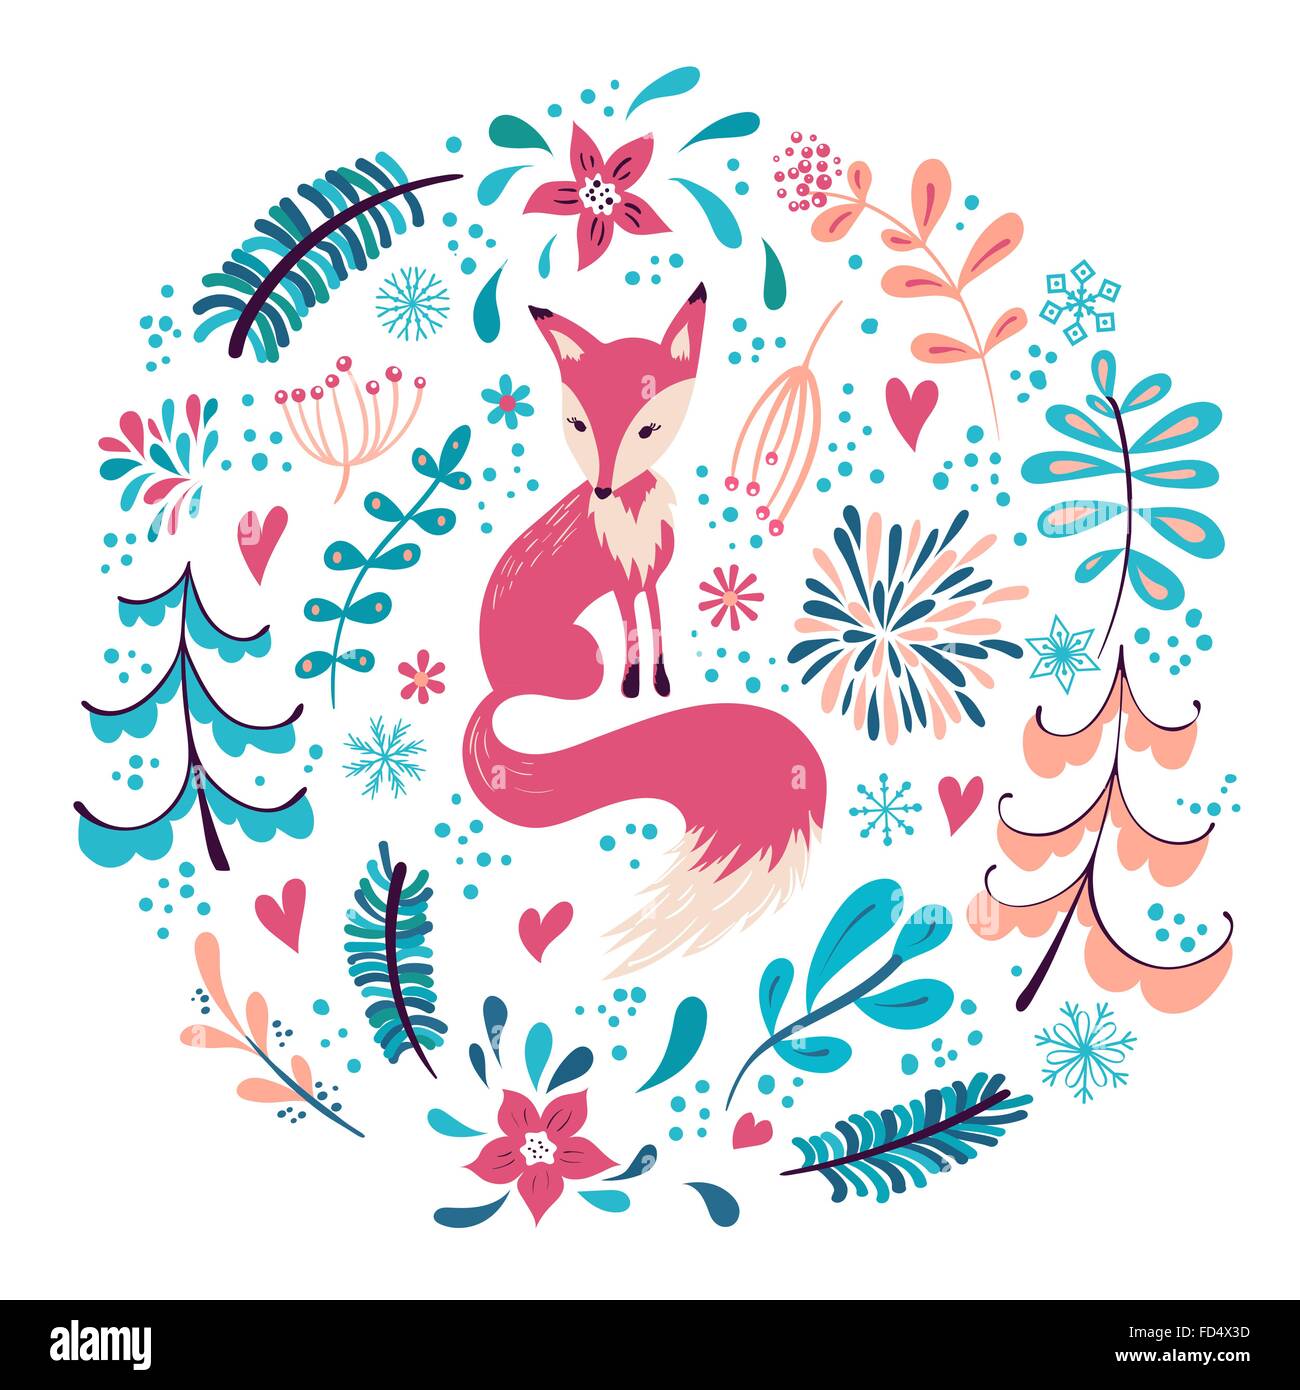 Fuchs mit Winter Blumen und Schneeflocken. Die Hand gezeichnete  Weihnachtsferien Design für Grußkarten, Kalender, Geschenkpapier  Stock-Vektorgrafik - Alamy